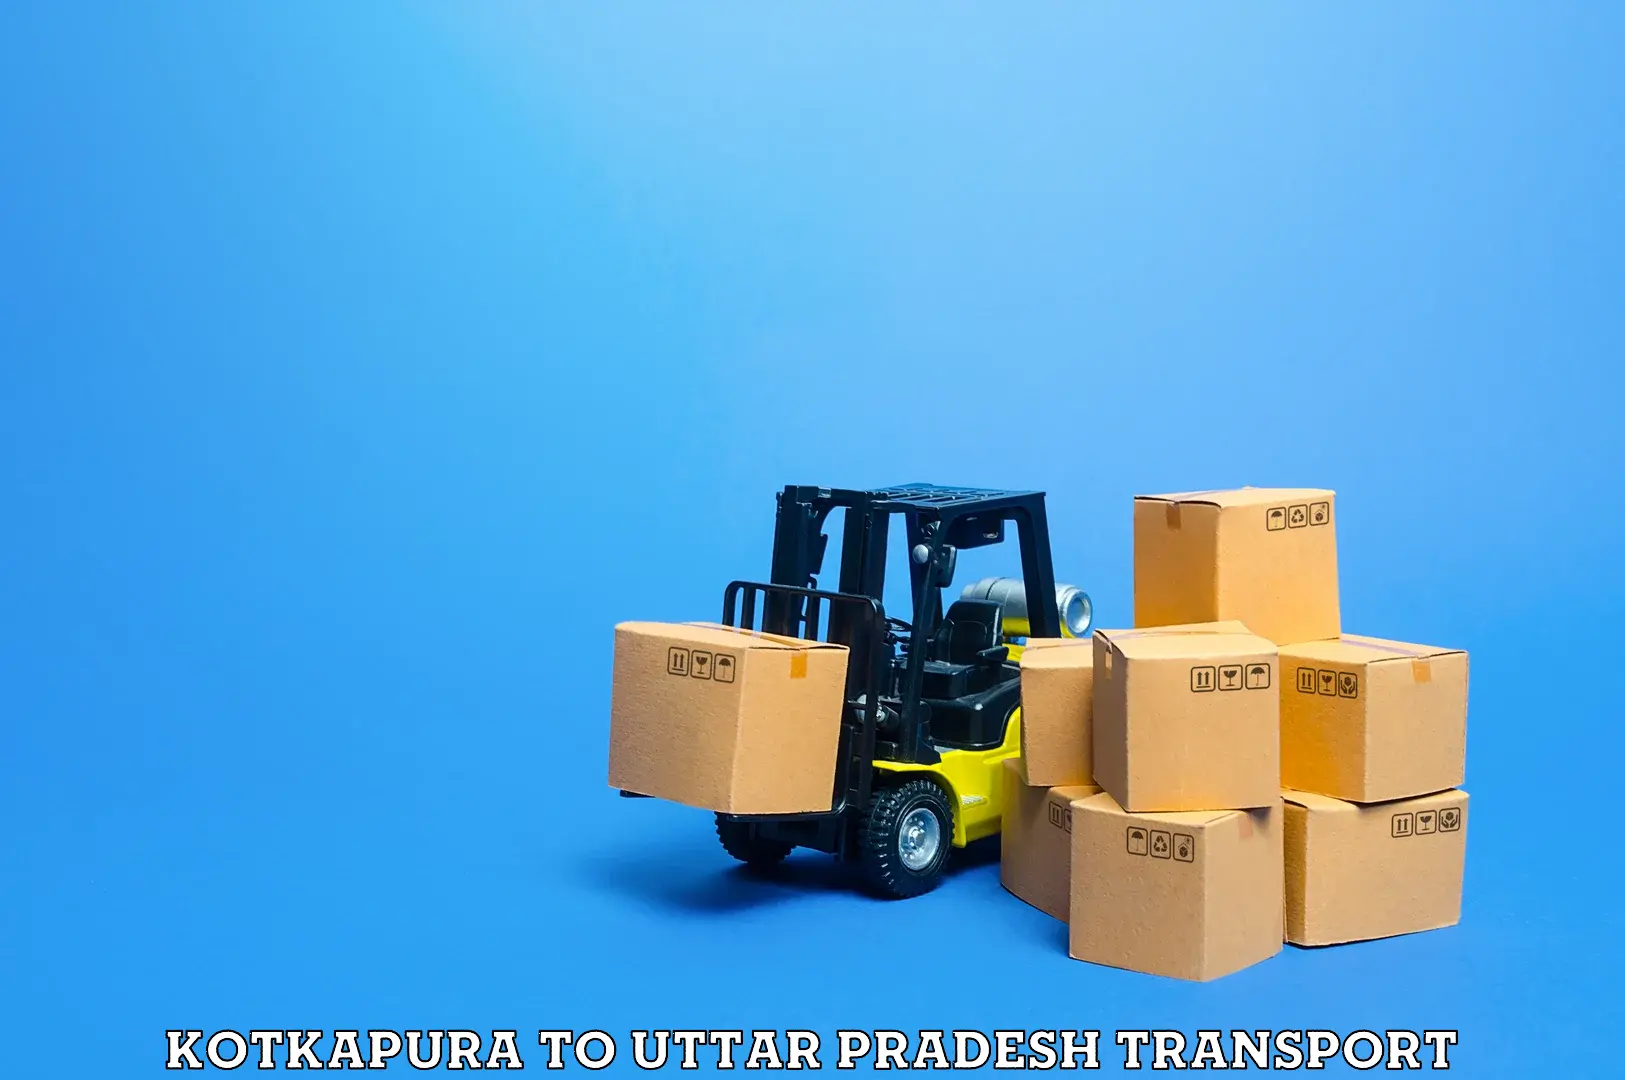 Daily parcel service transport Kotkapura to Kasganj